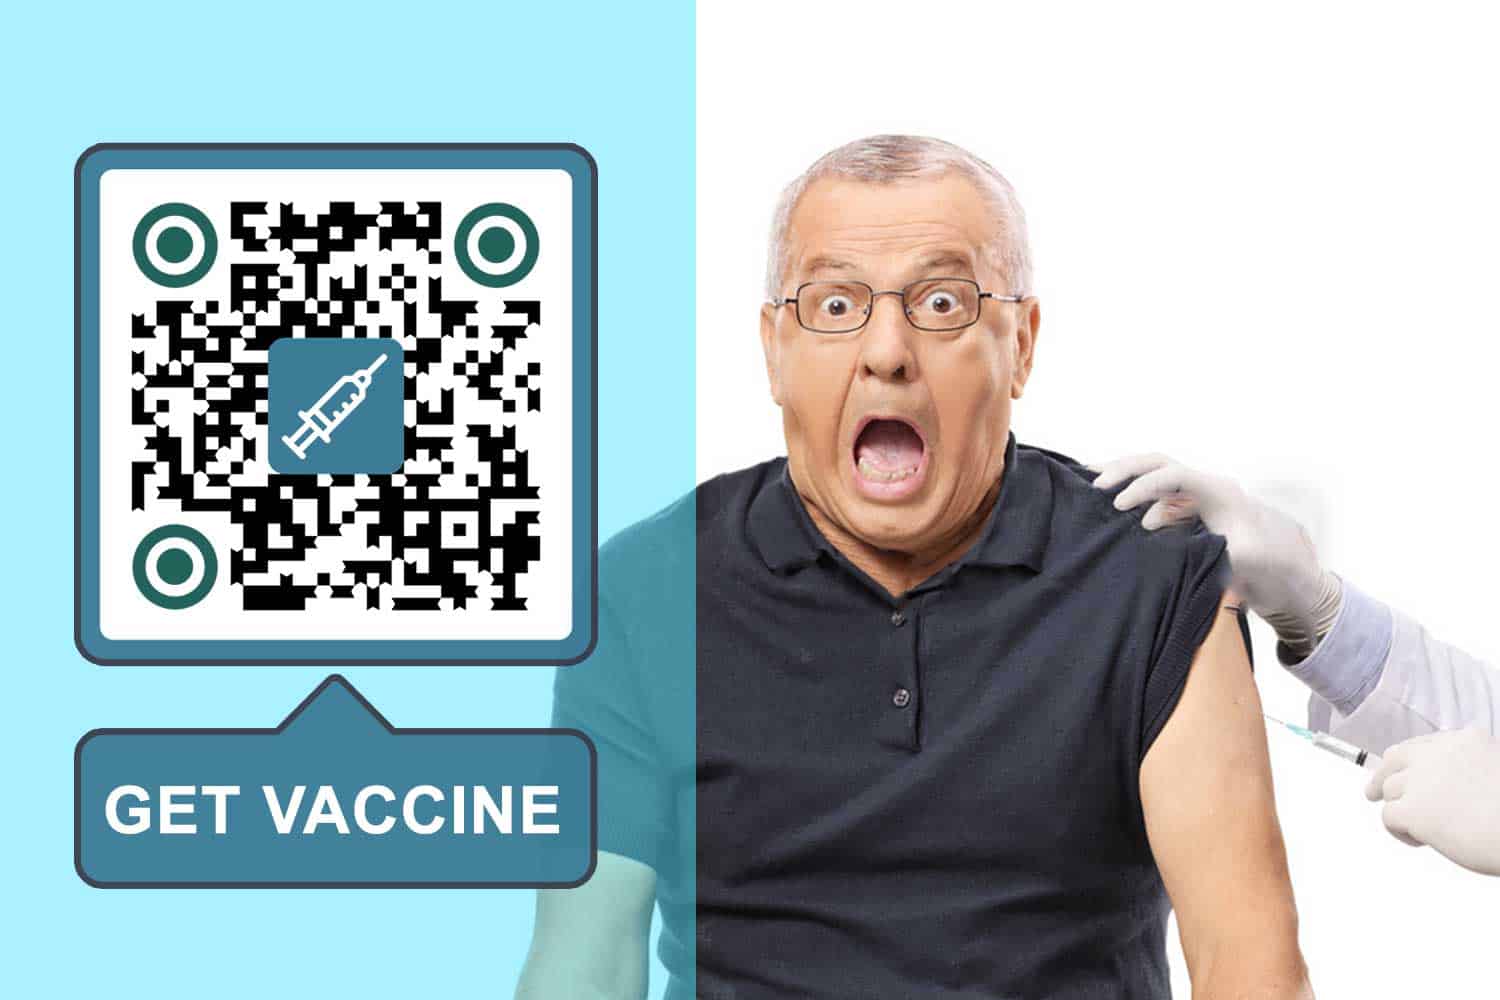 QR-Code für Impfstoff erstellen